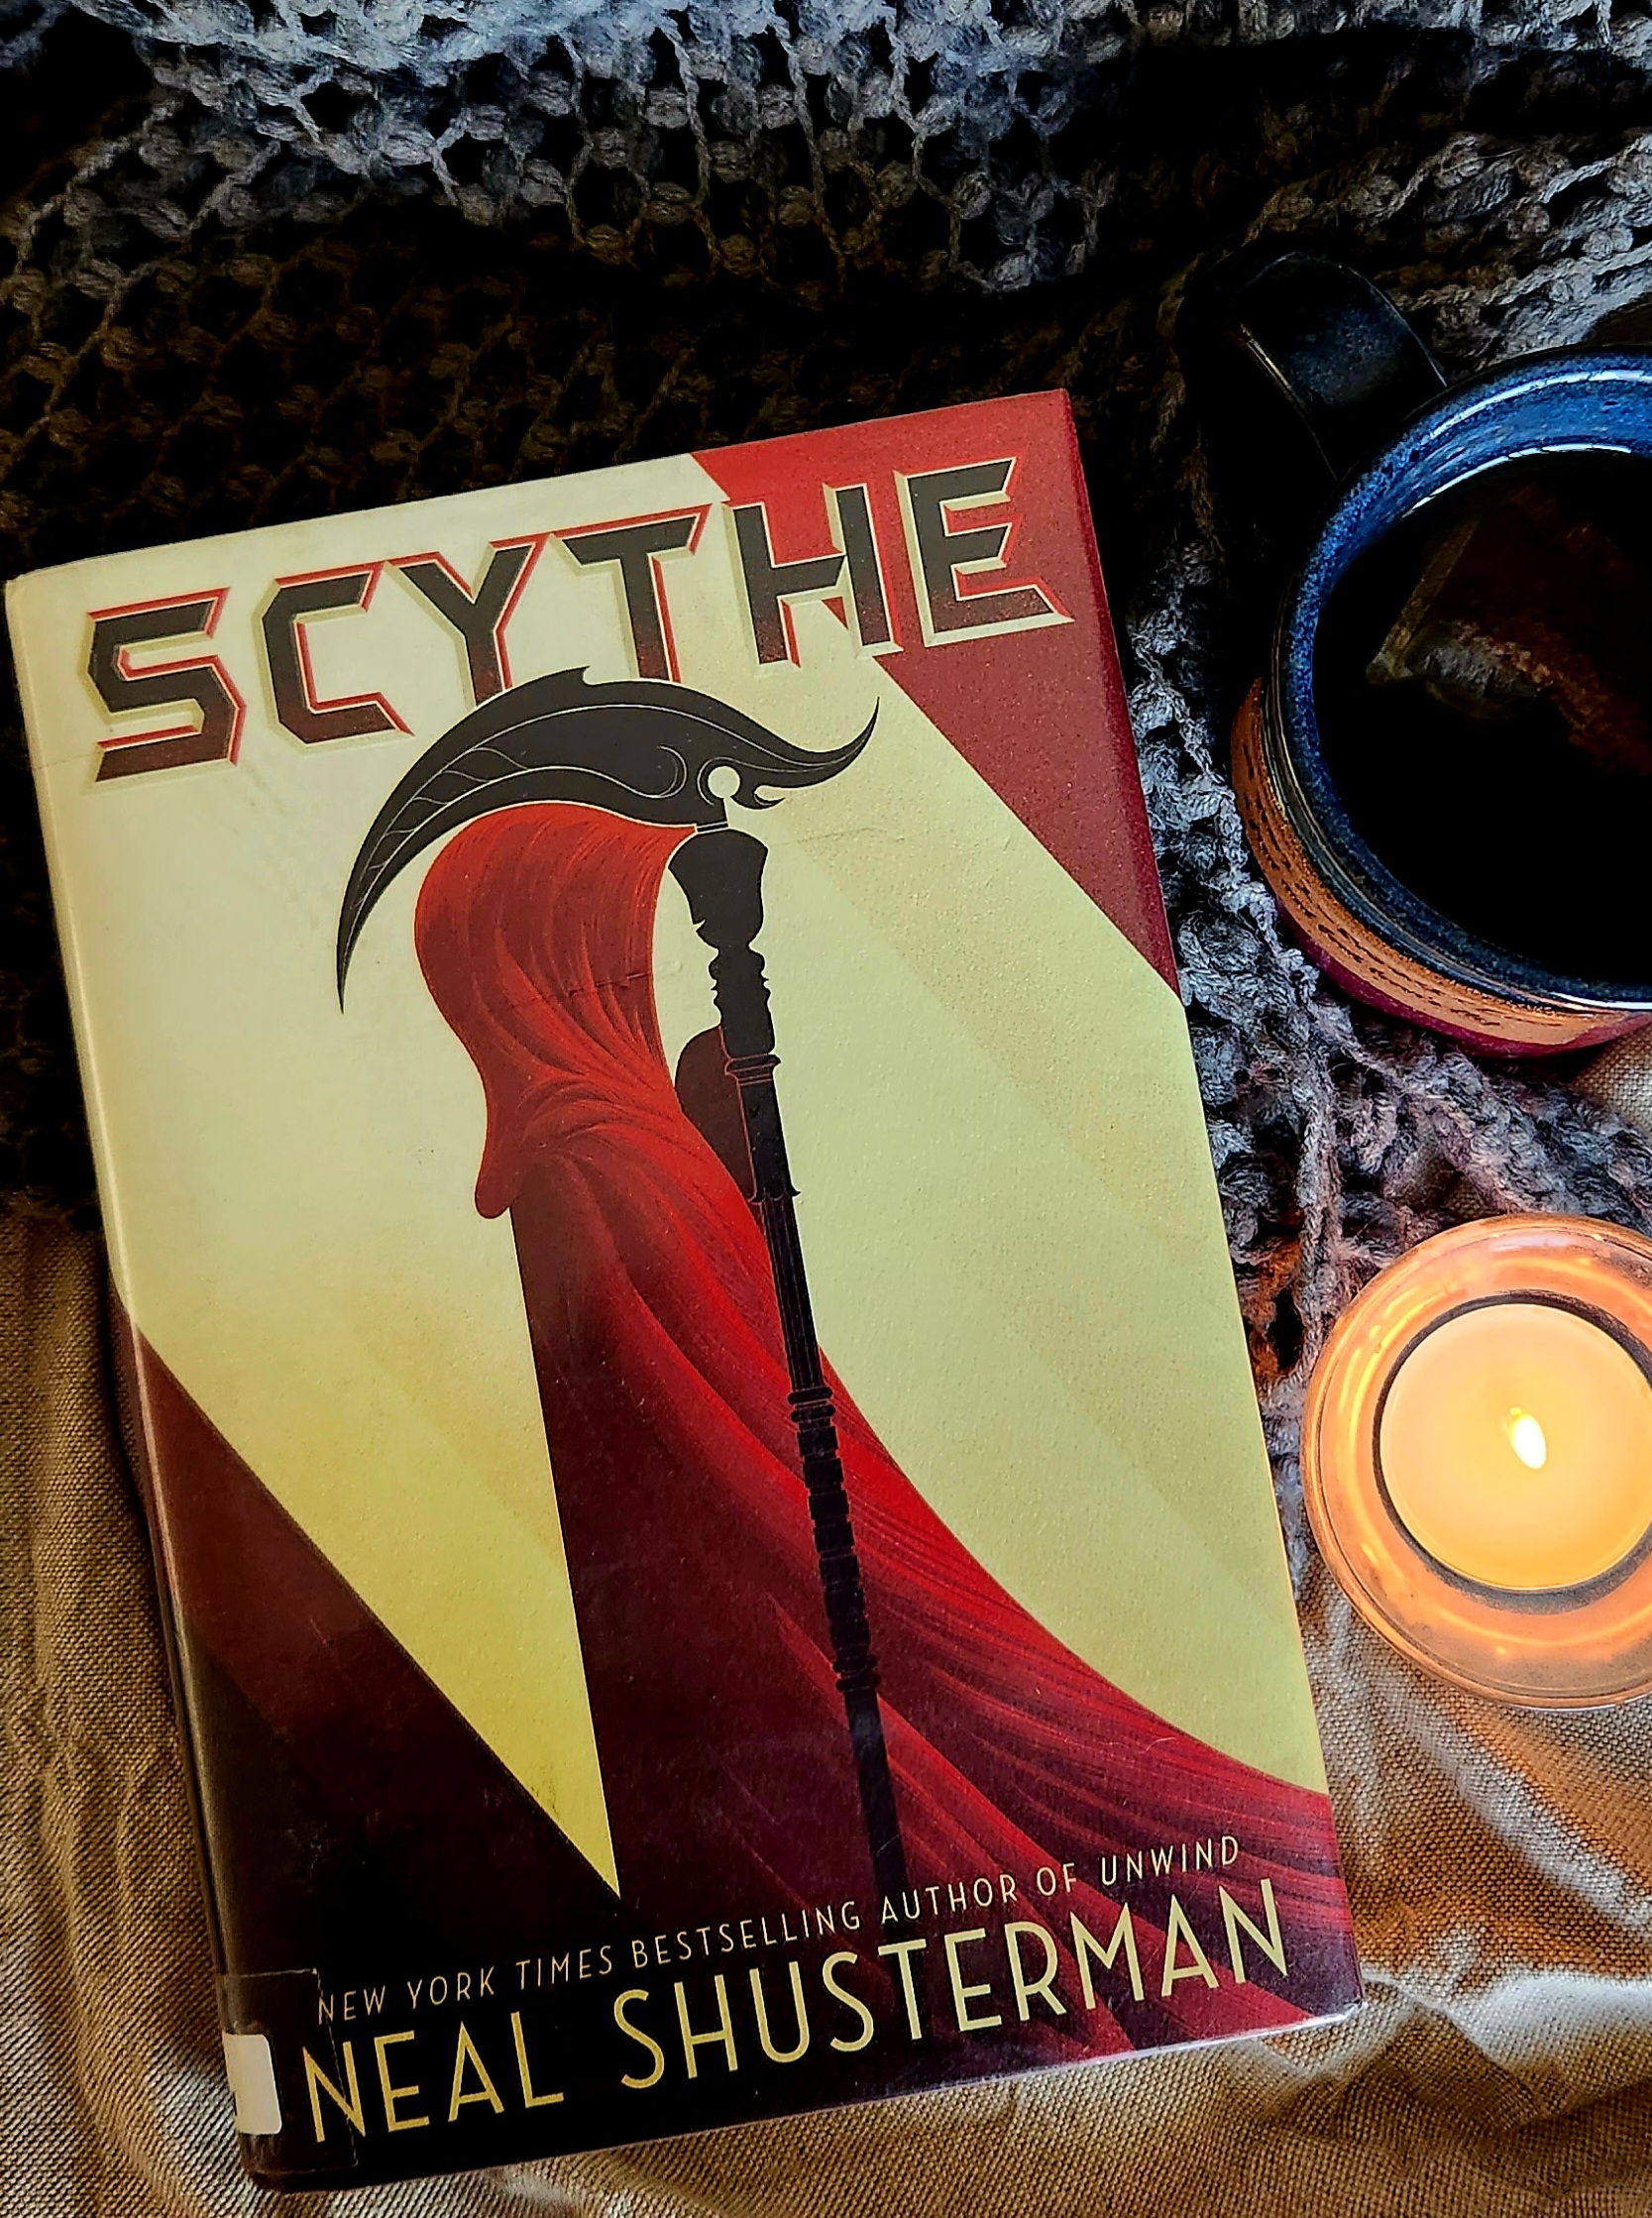 book cover of scythe